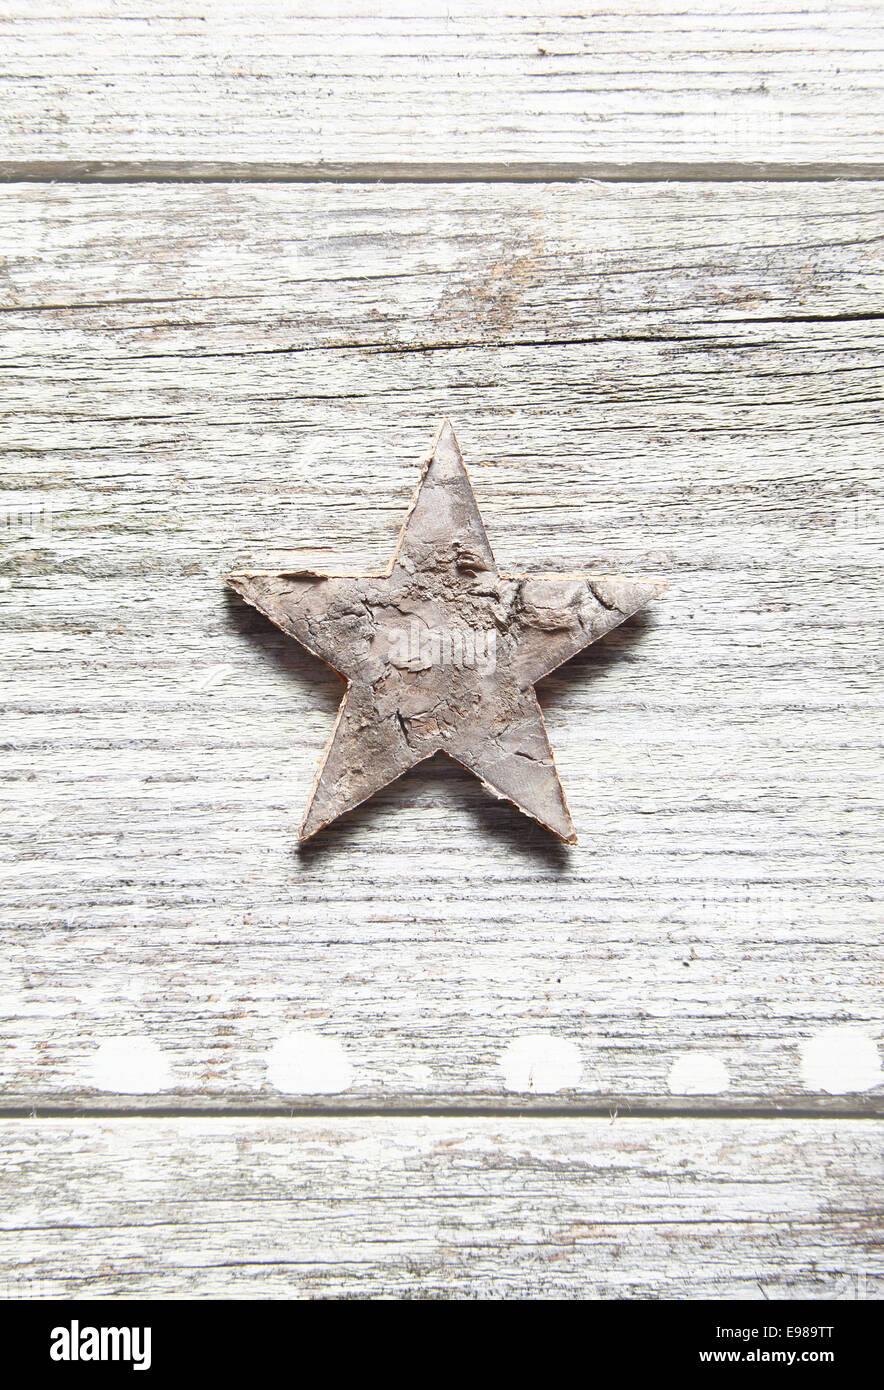 Sucio antigua estrella de Navidad centrado verticalmente sobre tablones de madera veteada erosionados y copyspace Foto de stock